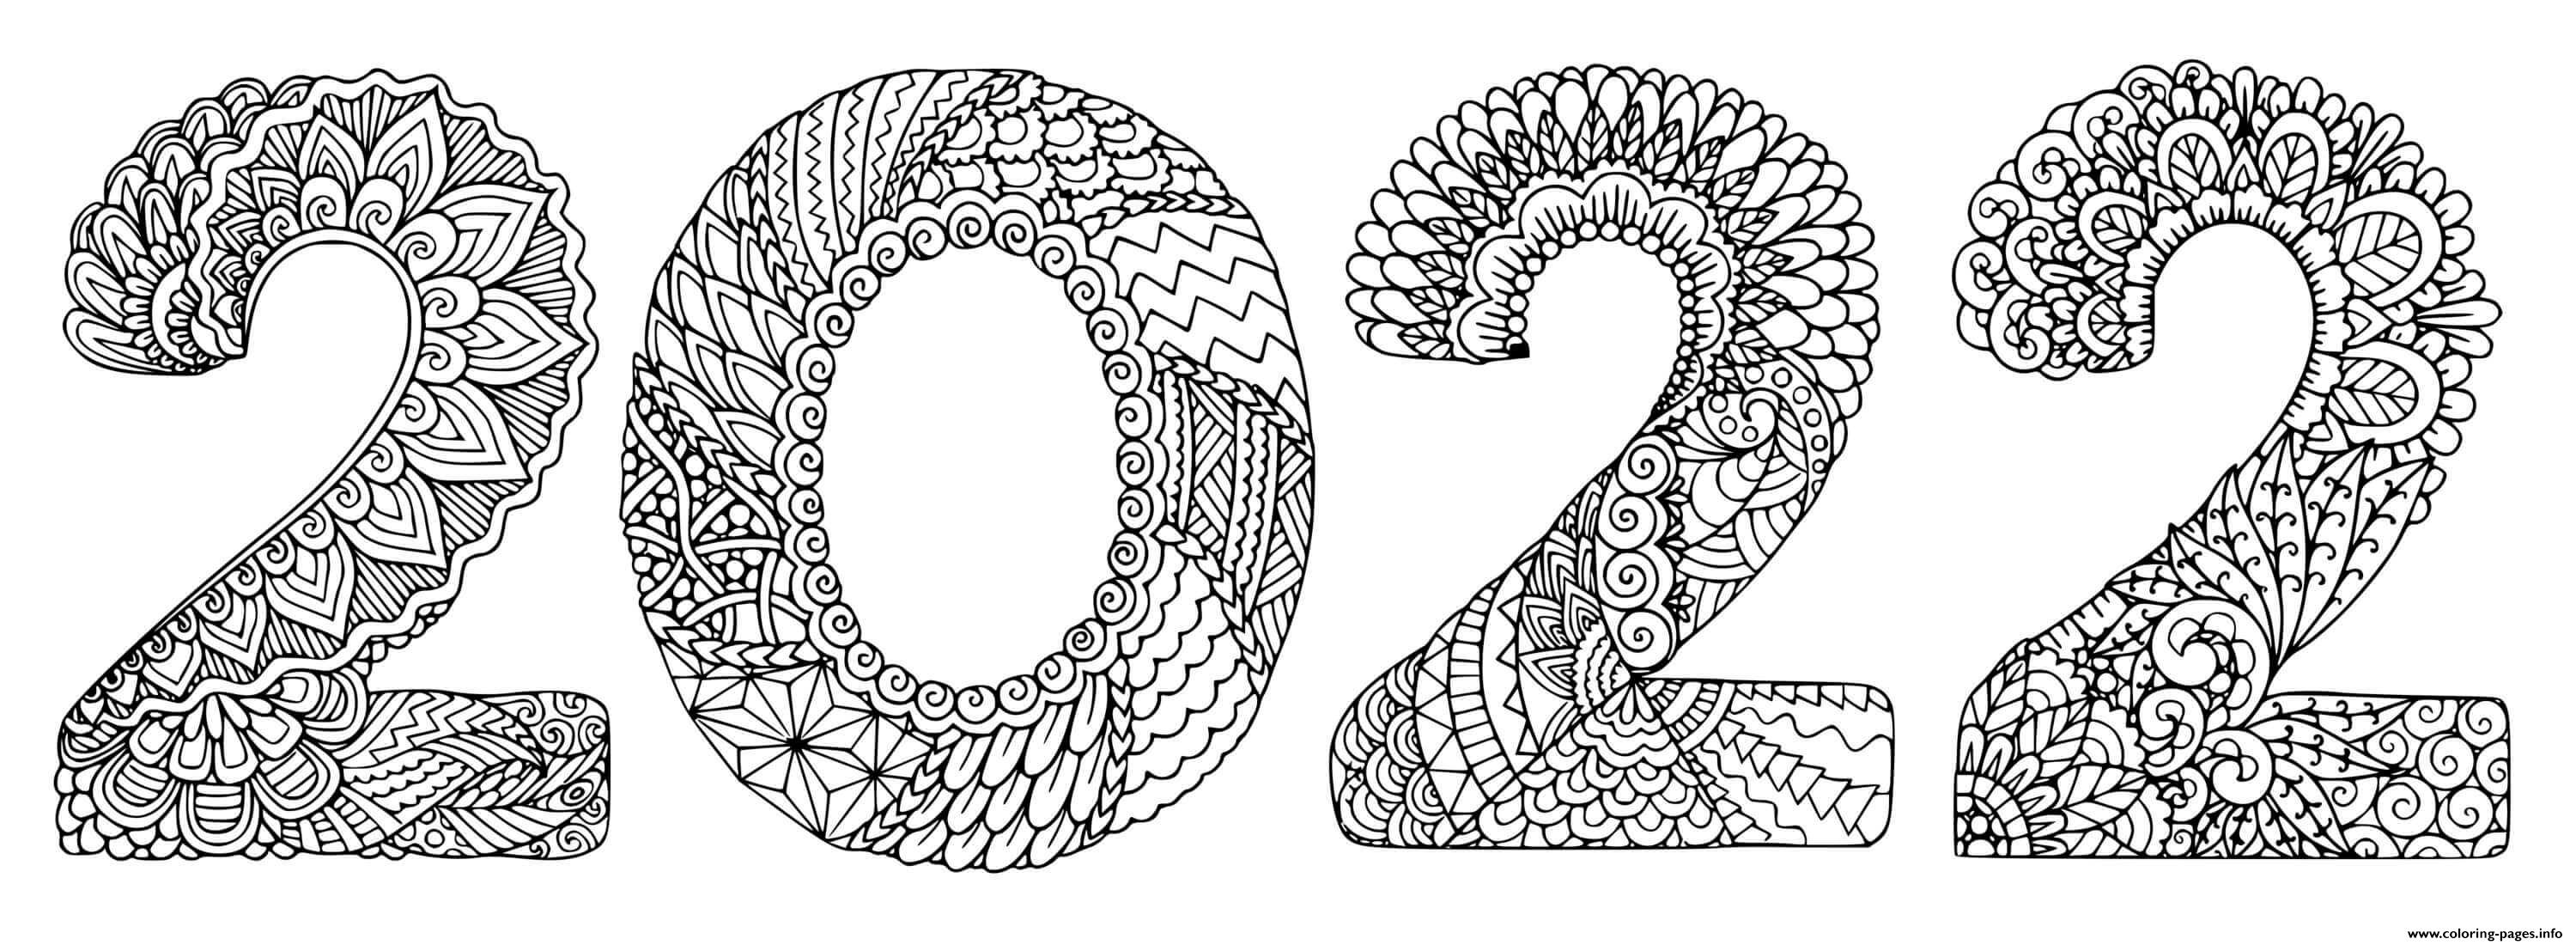 Mandala Art Happy New Year 2022 Adult Mandala coloring